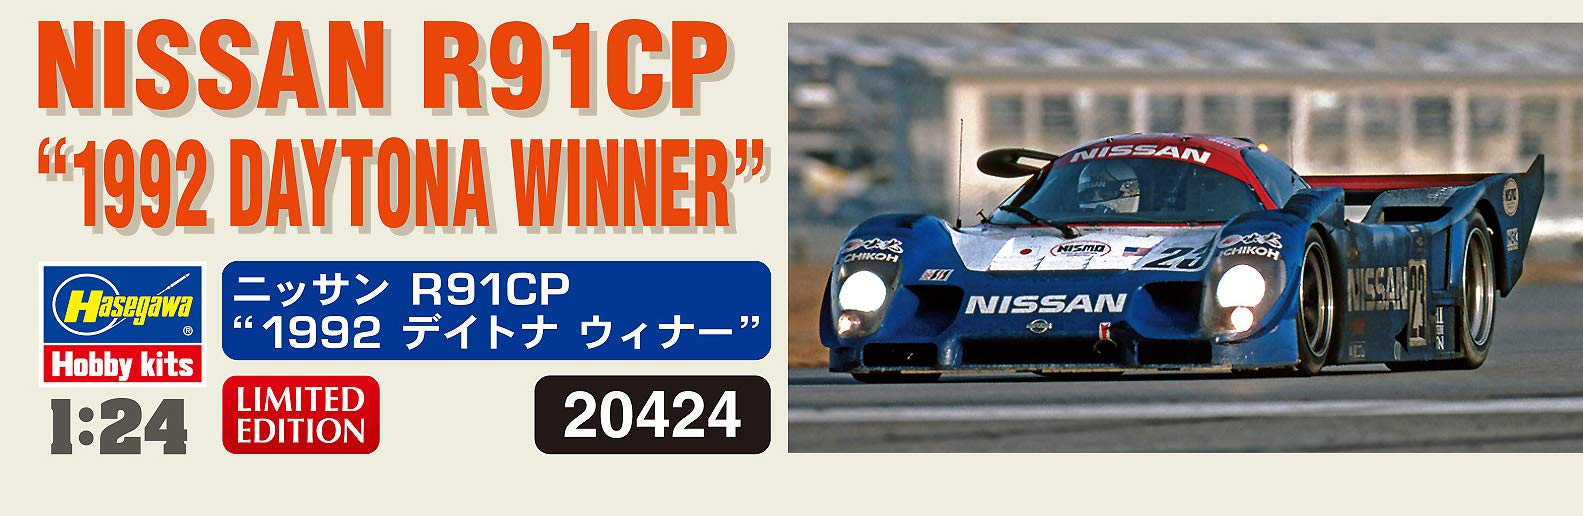 HASEGAWA 20424 Nissan R91Cp 1992 Daytona Winner 1/24 Scale Kit